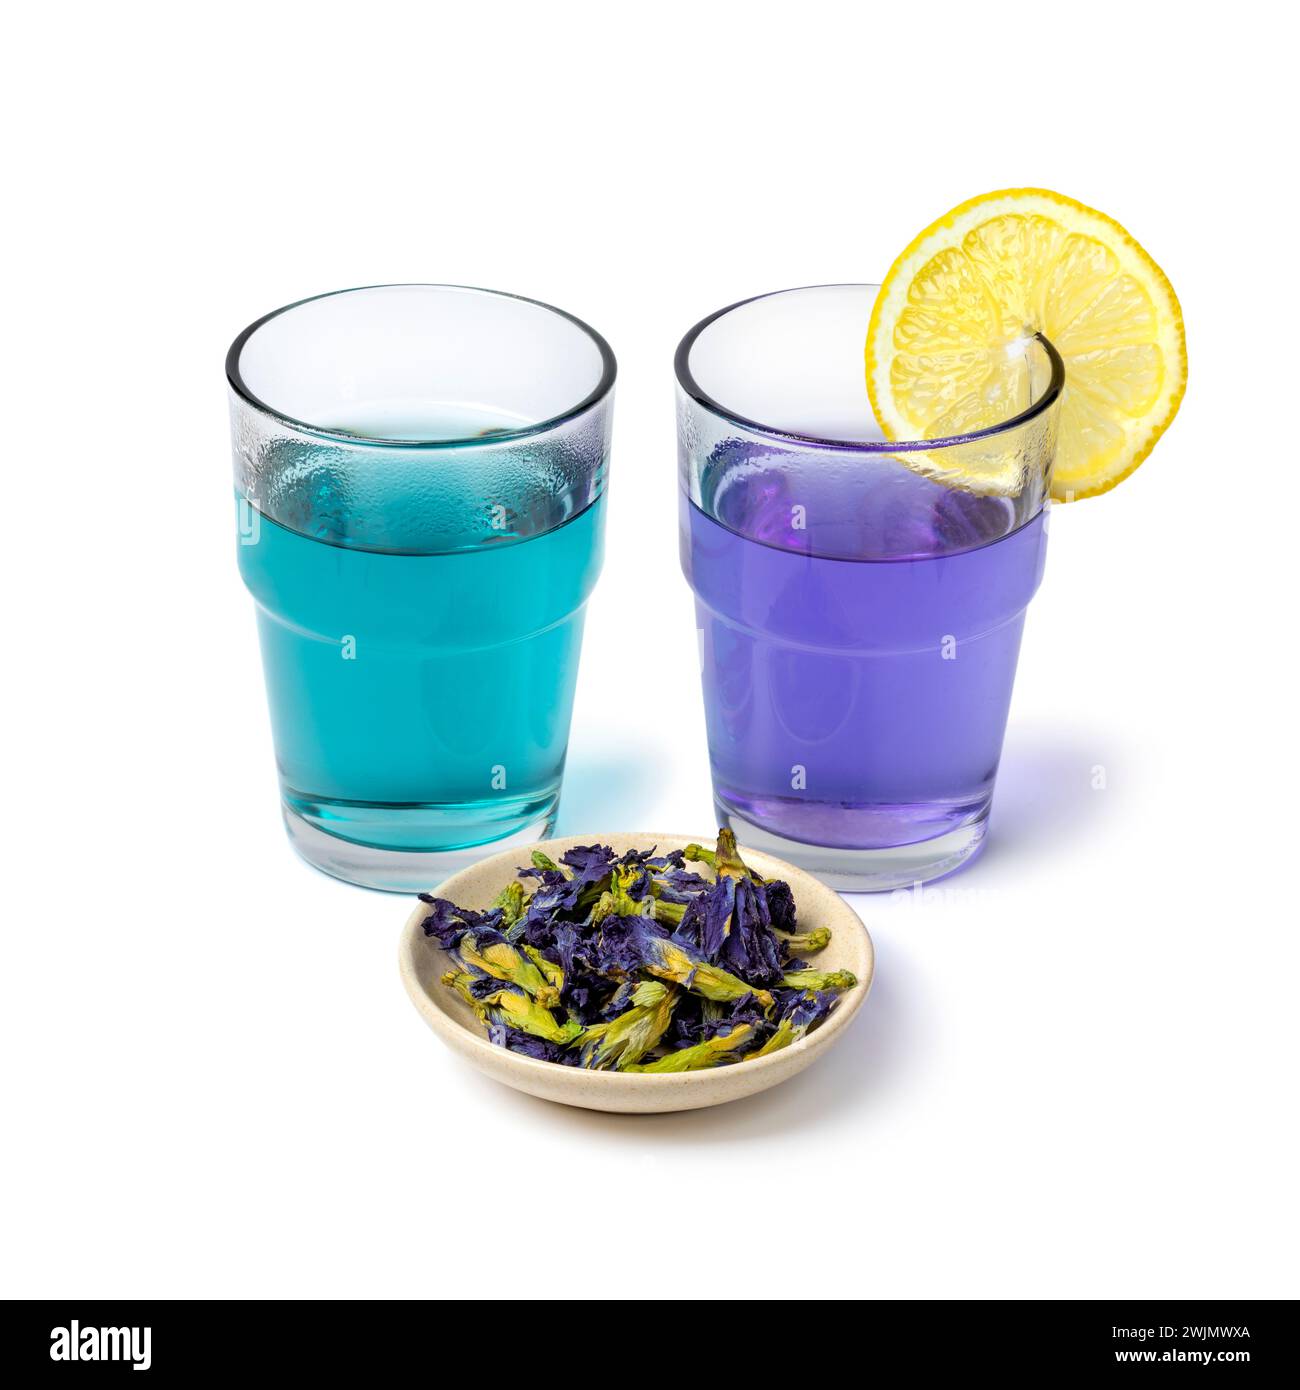 Vasos con té de flor de guisante de mariposa azul y púrpura con flores de té de guisante de mariposa seca y limón se cierran aislados sobre fondo blanco Foto de stock